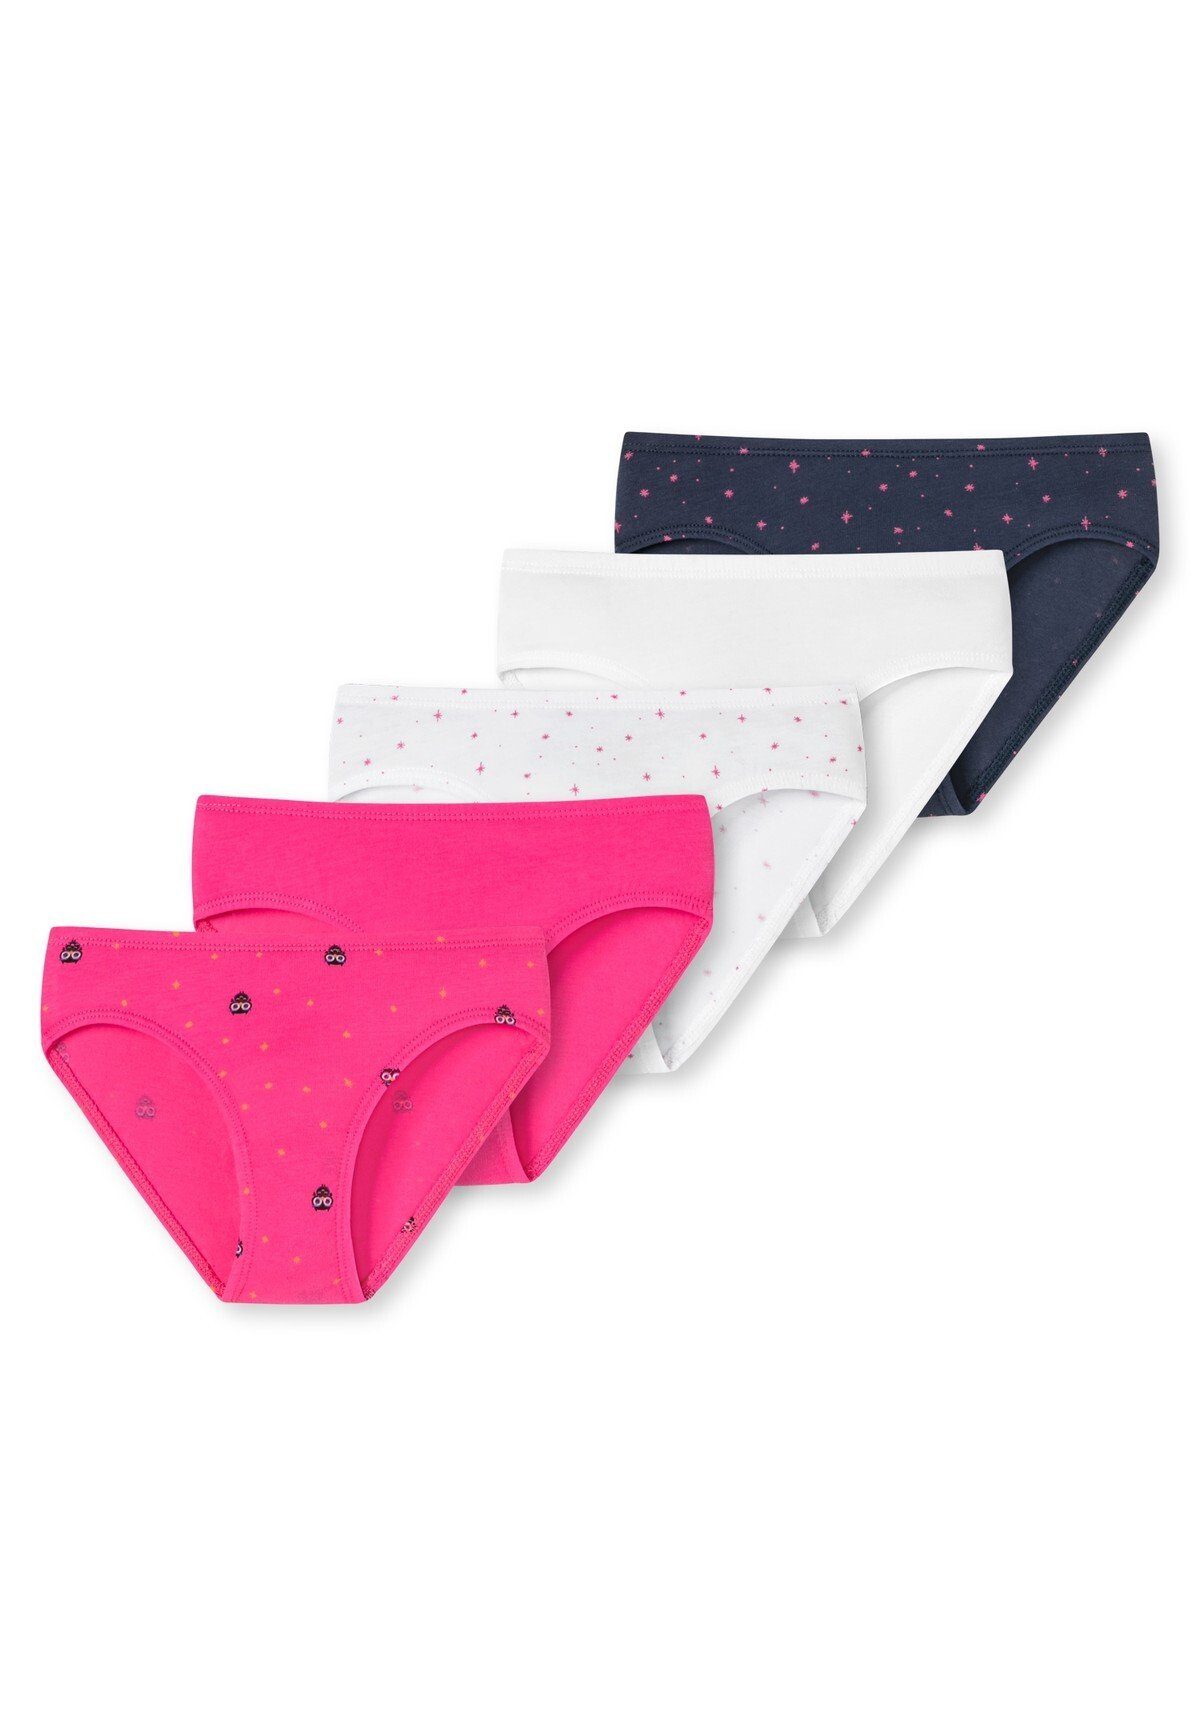 Schiesser Slip Mädchen Slips Pink/Weiß/Dunkelblau Pack Shorts 5er Pants, Unterhose, 